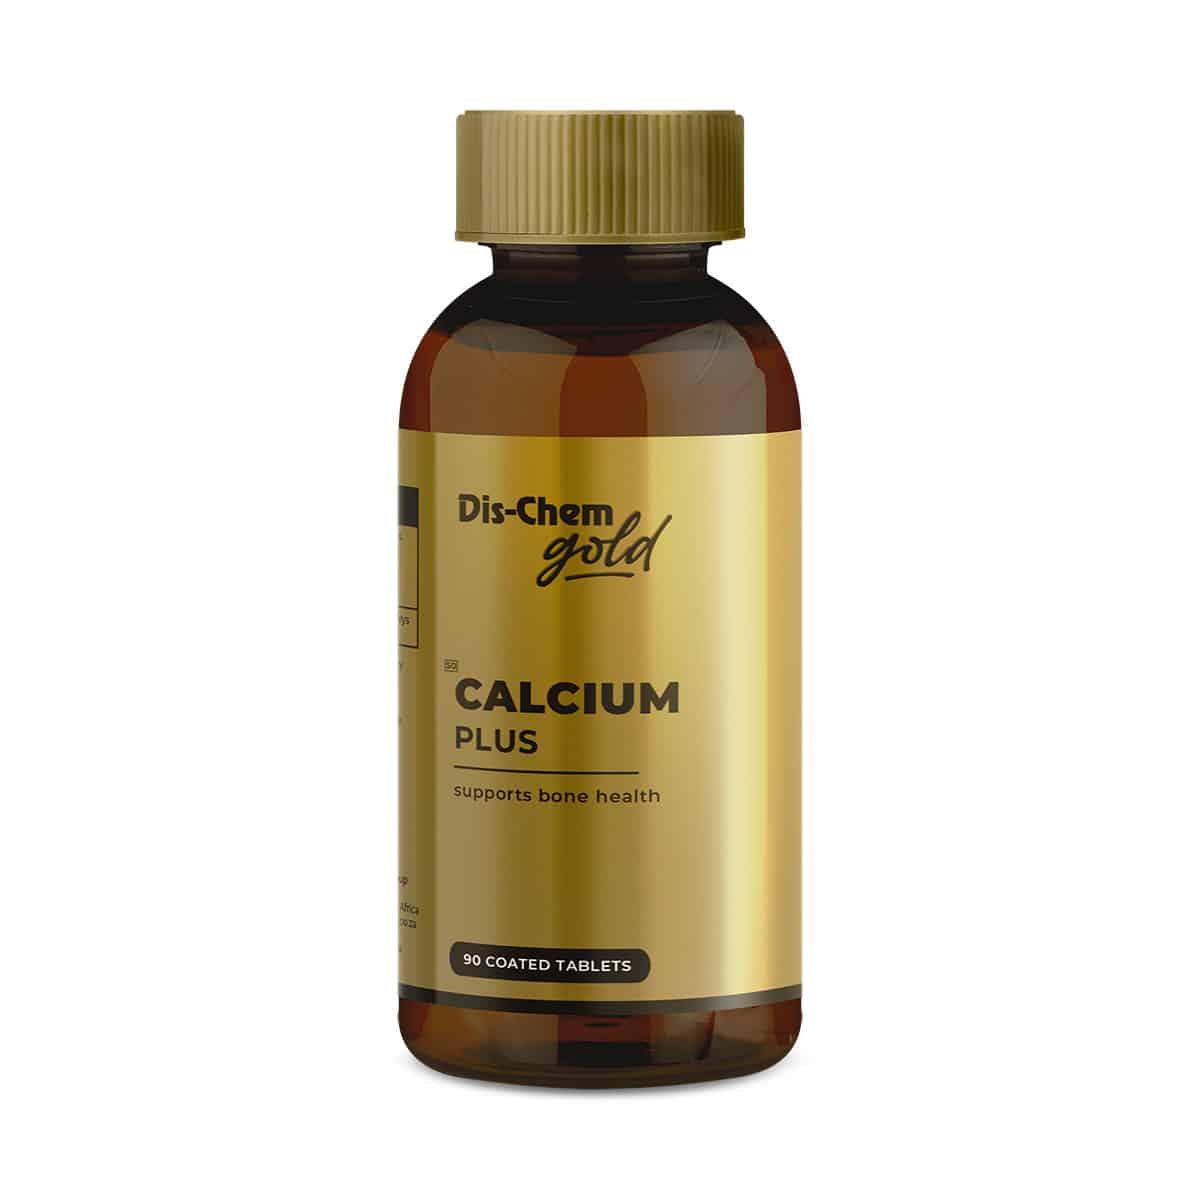 Dis-Chem Gold Calcium Plus - 90 Coated Tabs